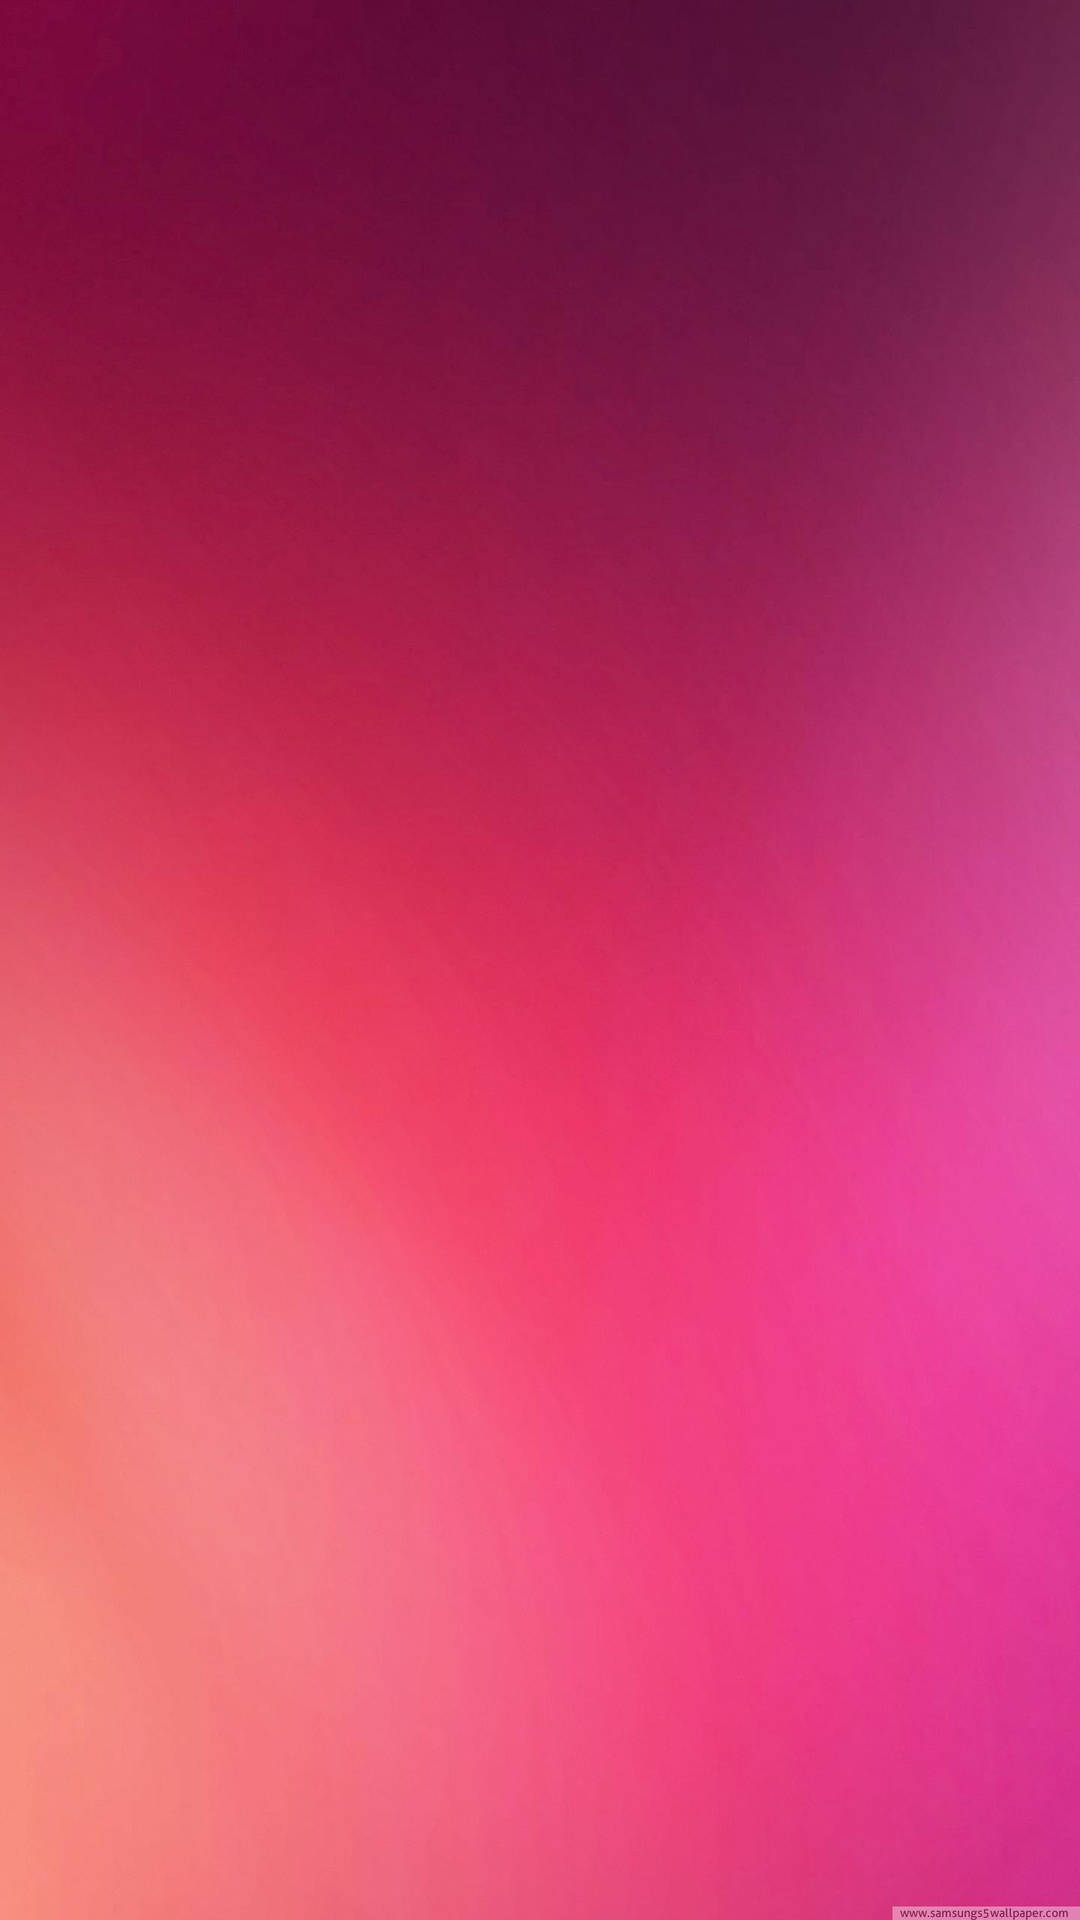 Samsung Galaxy S6 Pink Gradient Background